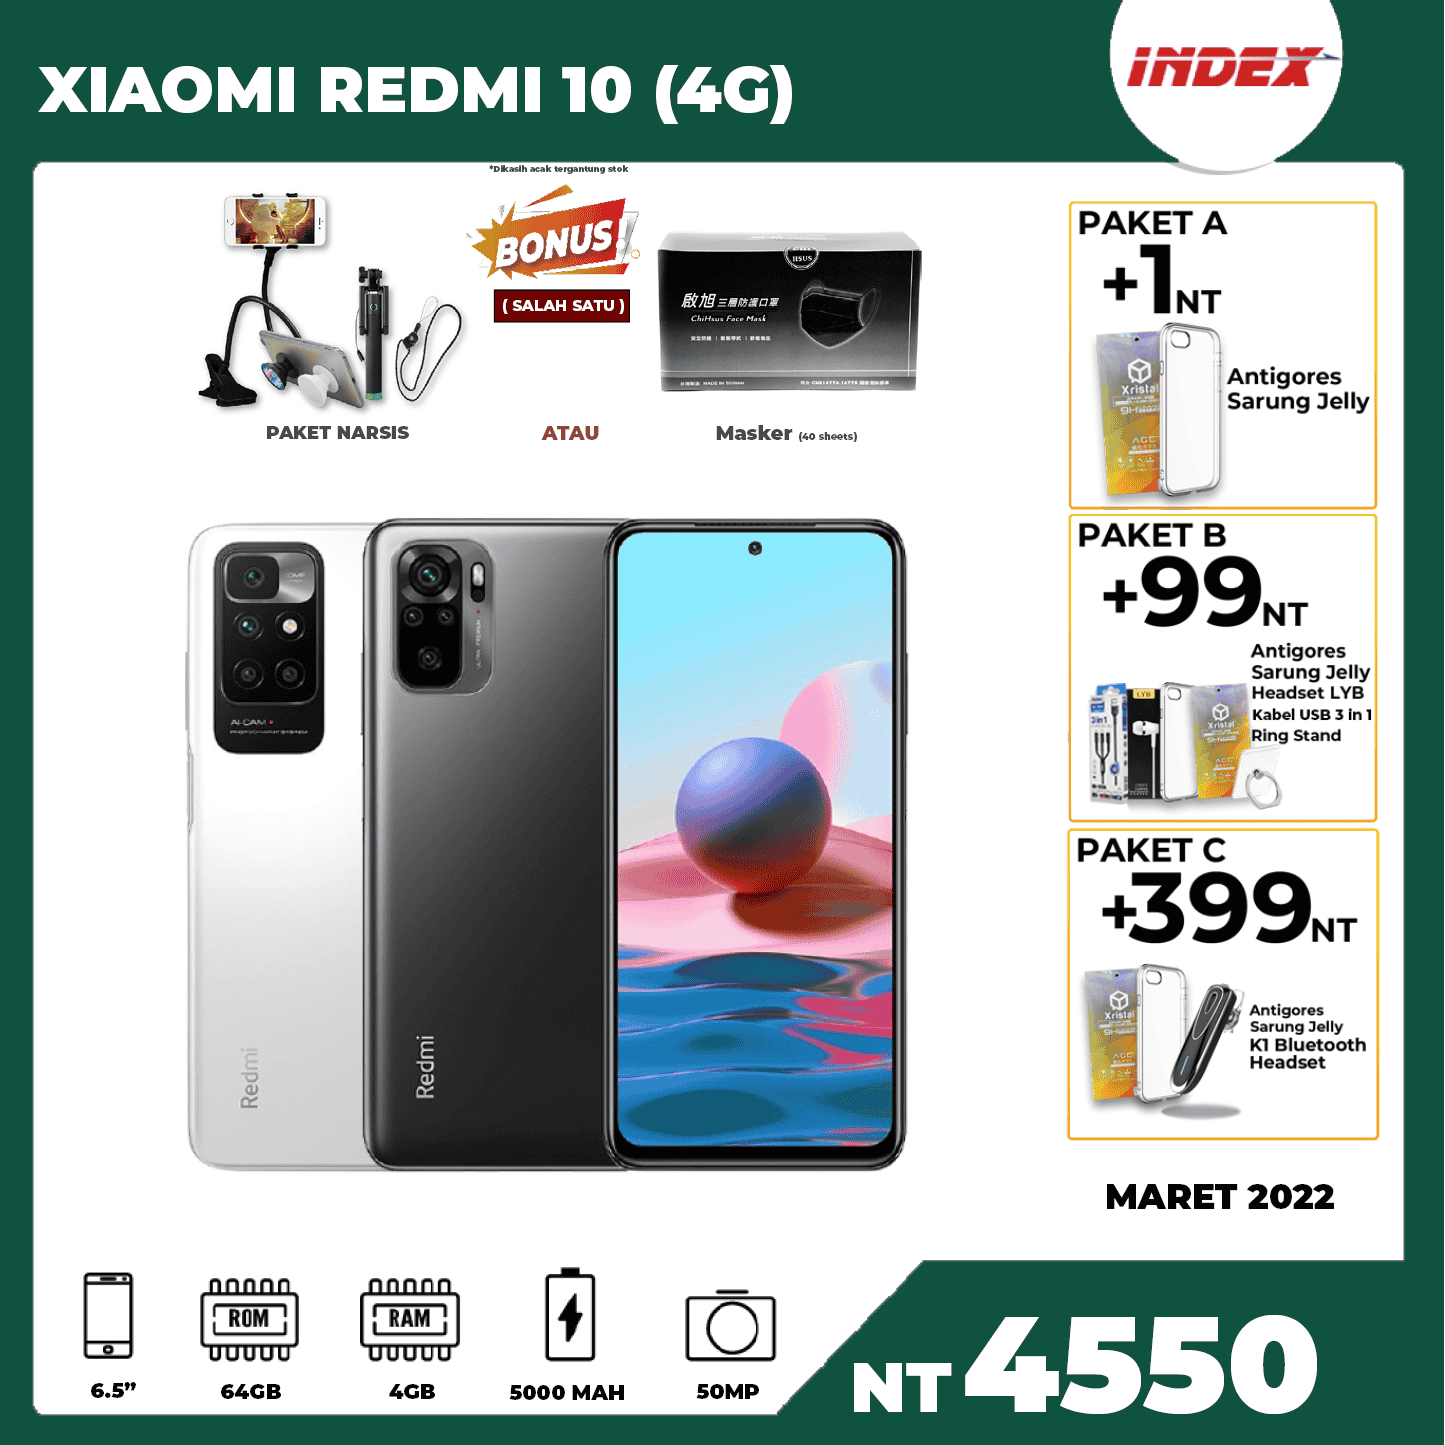 XIAOMI REDMI 10 (4G)